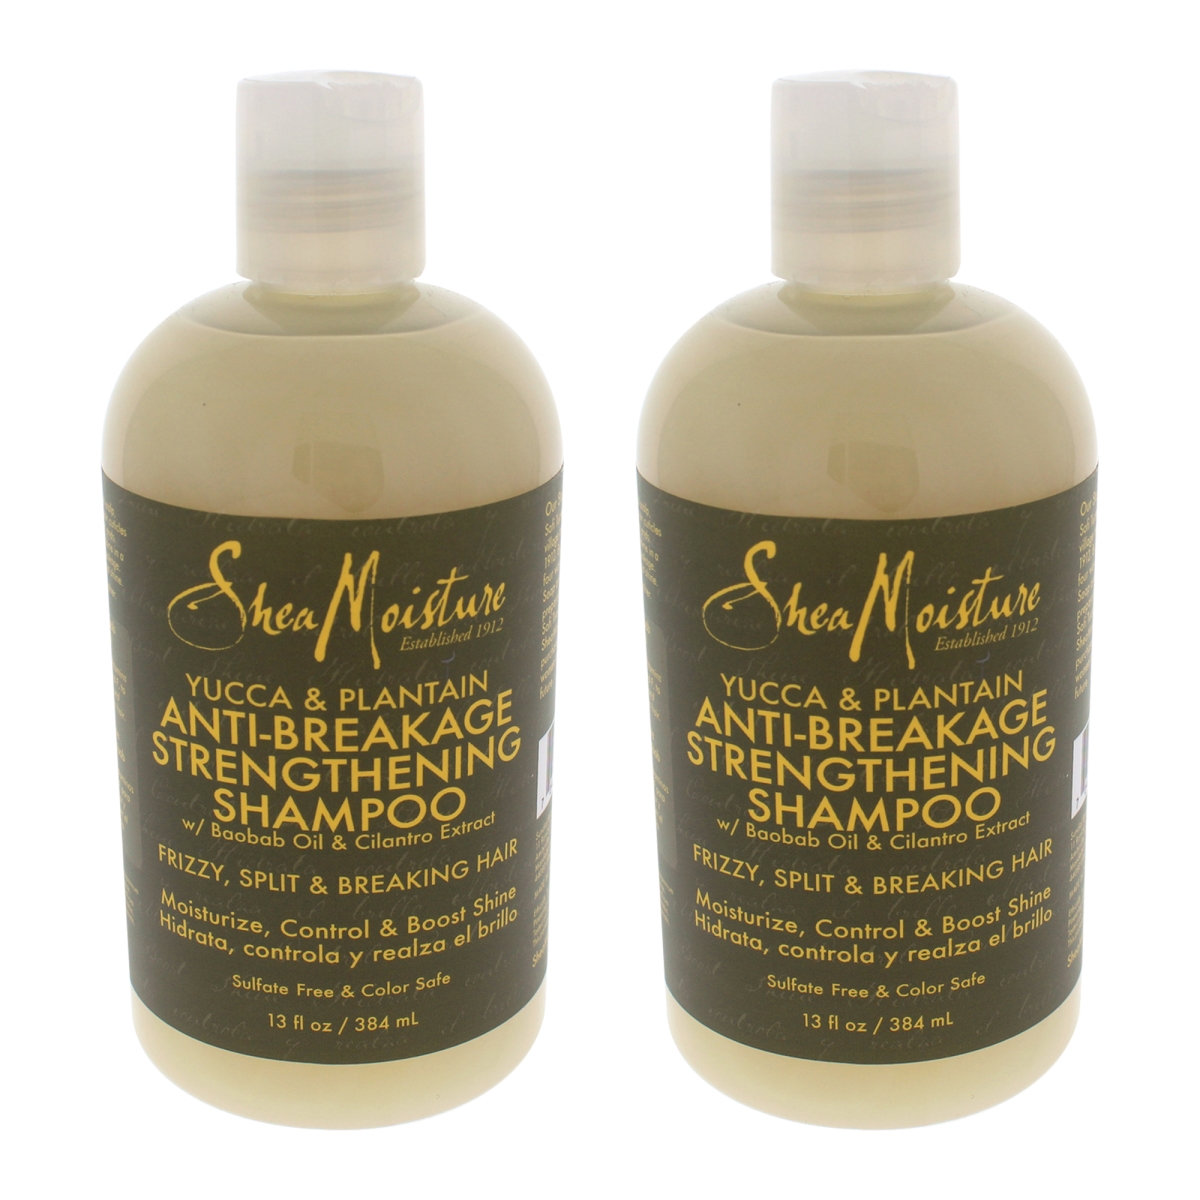 K0000376 Yucca & Plantain Anti-breakage Strengthening Shampoo For Unisex - 13 Oz